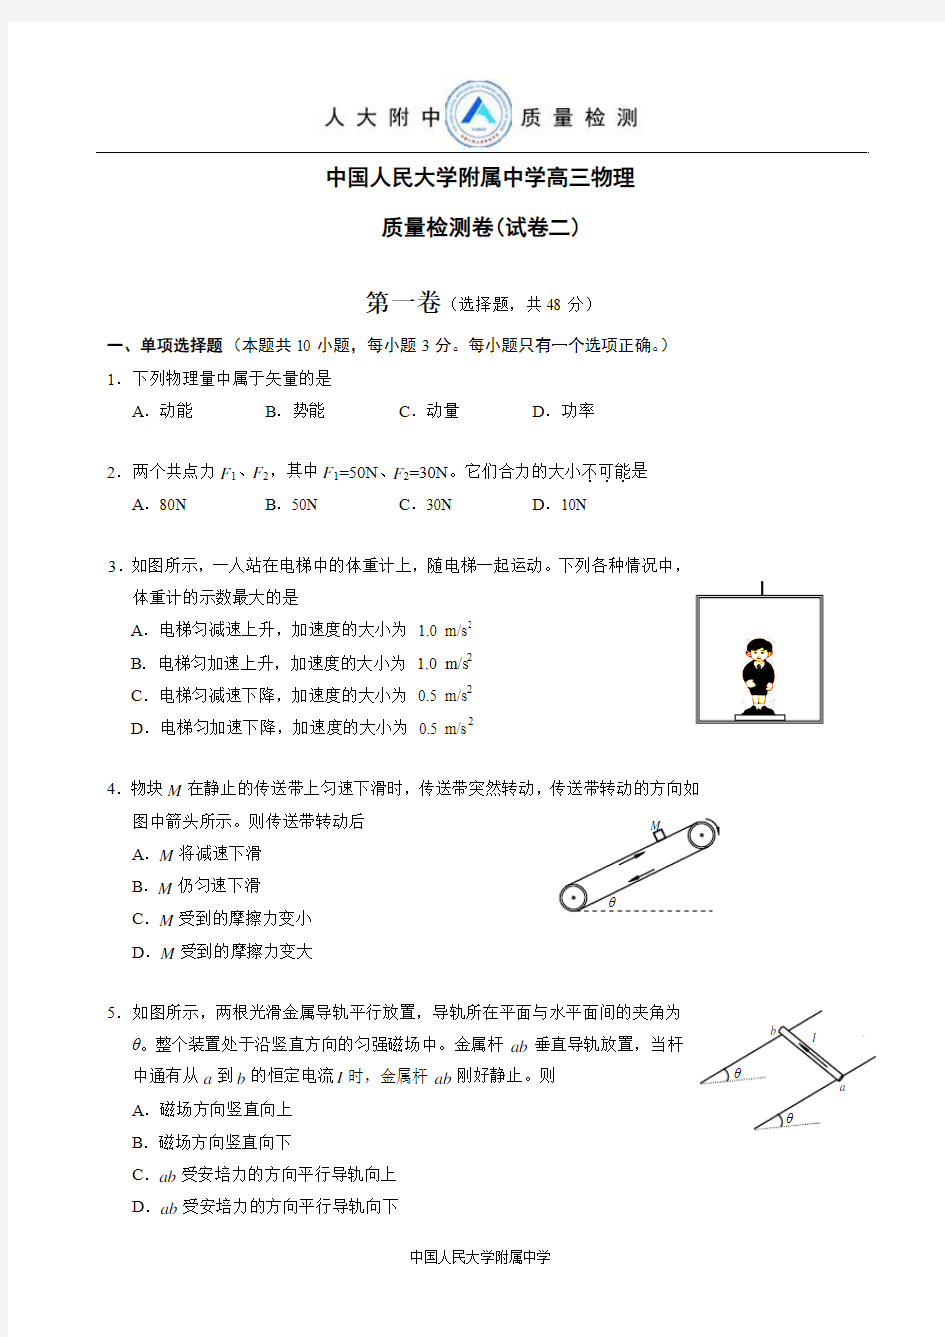 中国人民大学附属中学高三物理质量检测卷(试卷二)